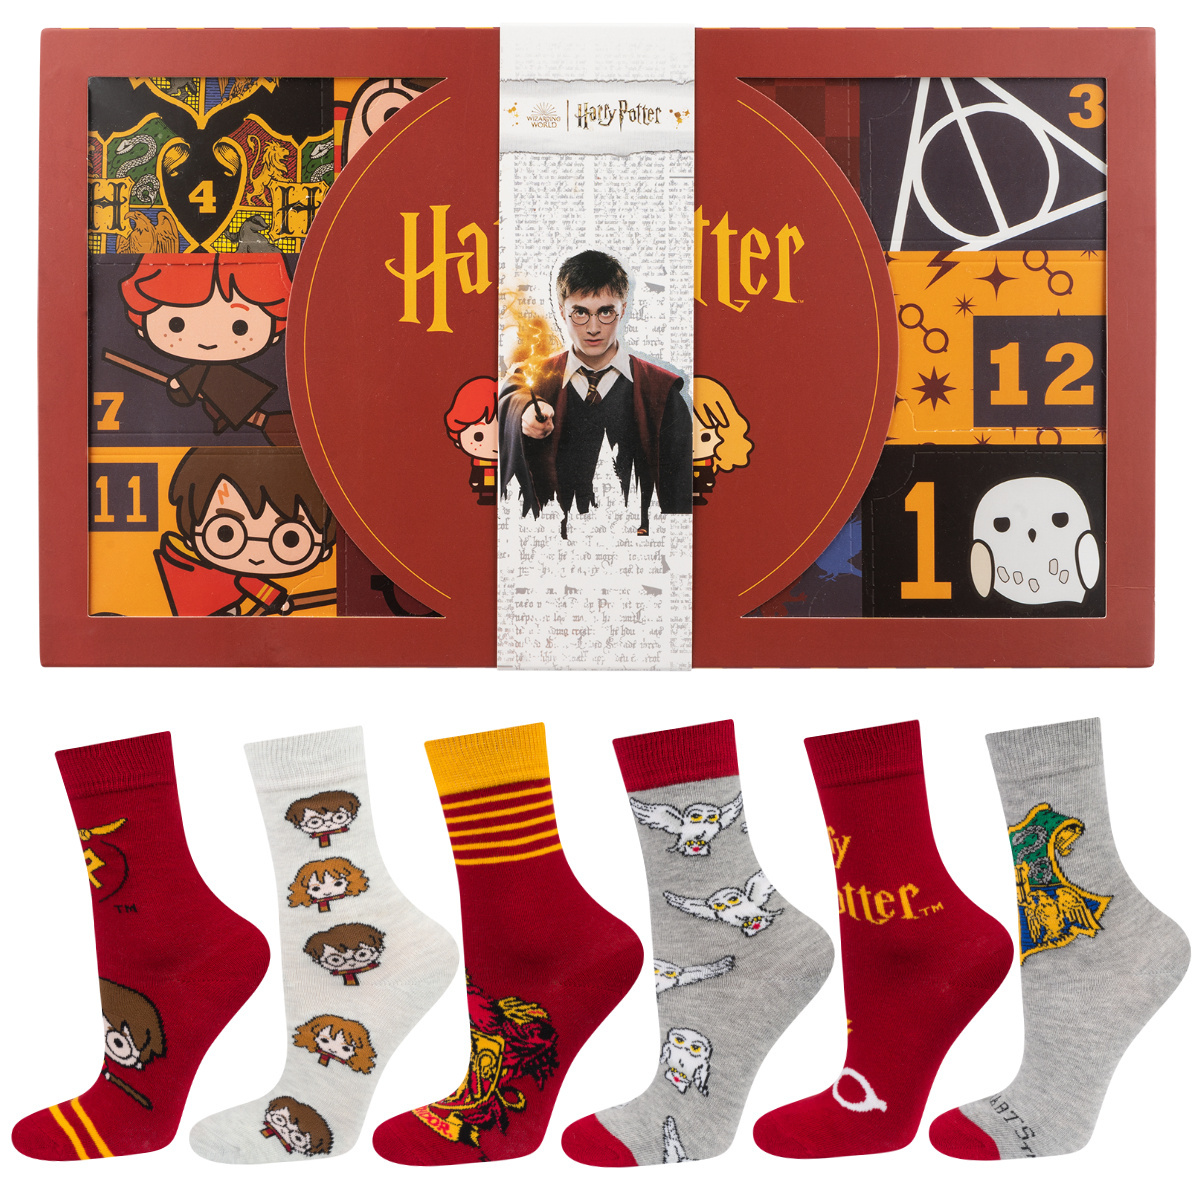 Idées cadeaux - Boutique Harry Potter